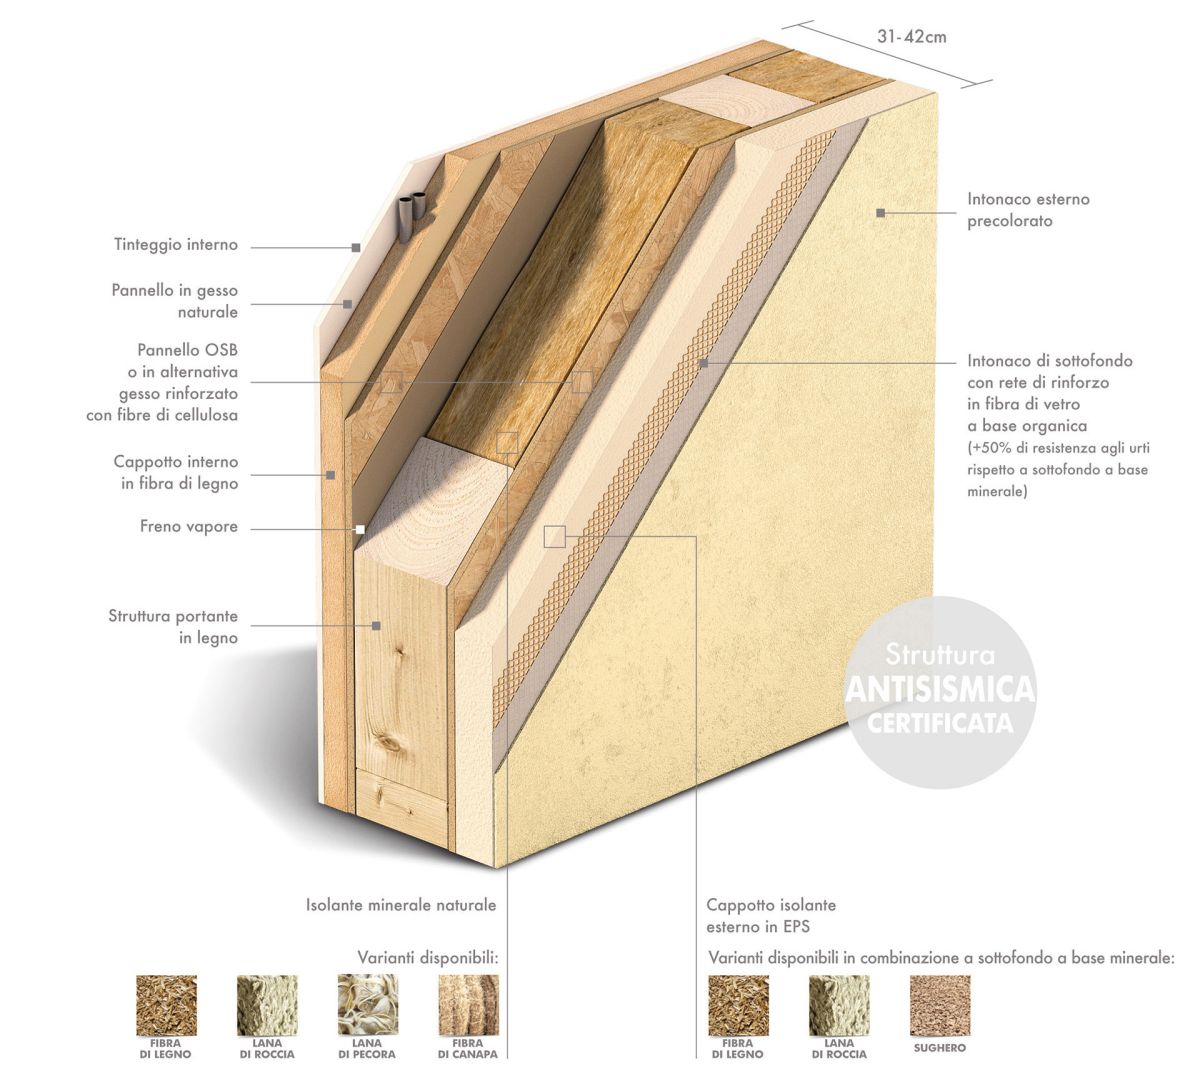 Alta qualità della struttura dei sistemi di prefabbricazione realizzati in fabbrica per case in legno